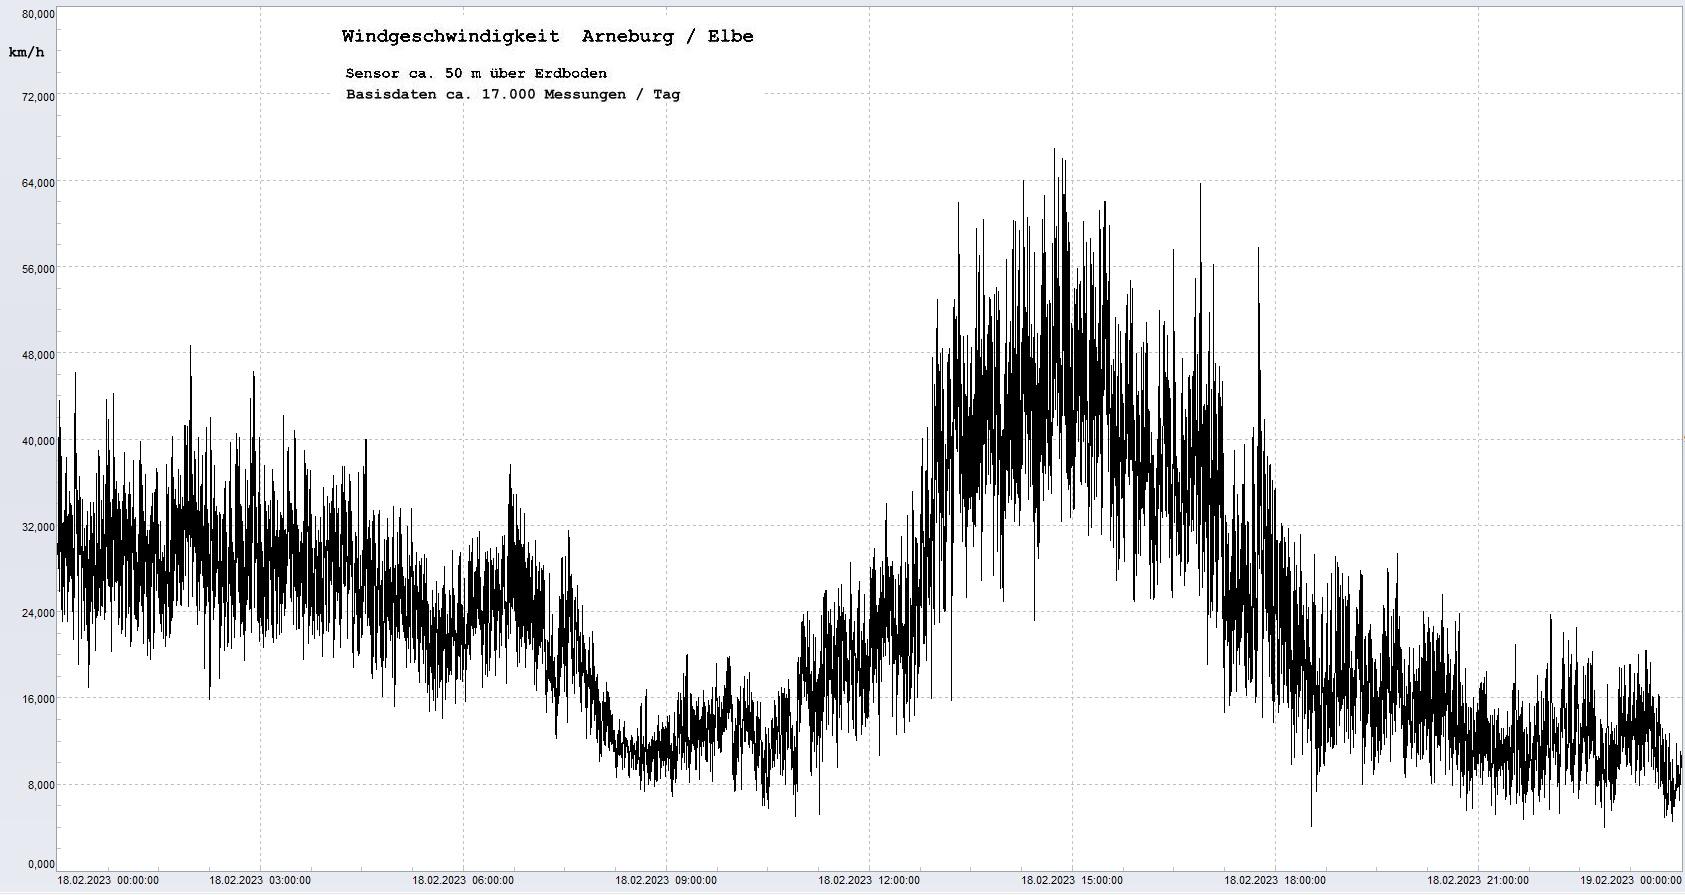 Arneburg Tages-Diagramm Winddaten, 18.02.2023
  Diagramm, Sensor auf Gebude, ca. 50 m ber Erdboden, Basis: 5s-Aufzeichnung